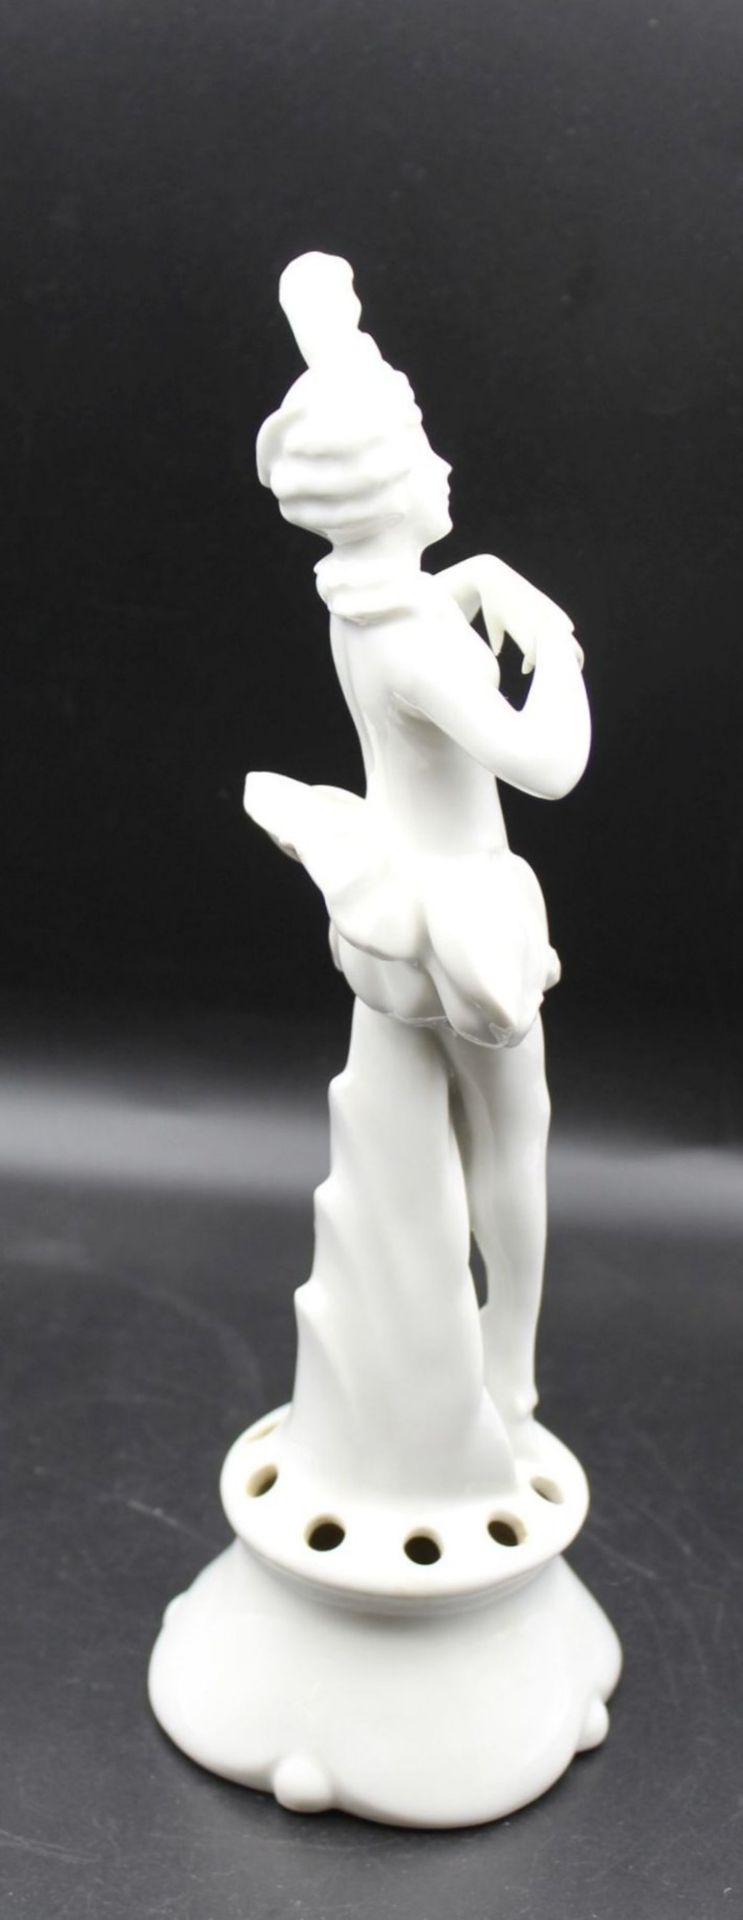 Tänzerin-Figur für Steckschale, gemarkt, Weißporzellan, wohl um 1920/30, H-24,5cm. - Bild 2 aus 4